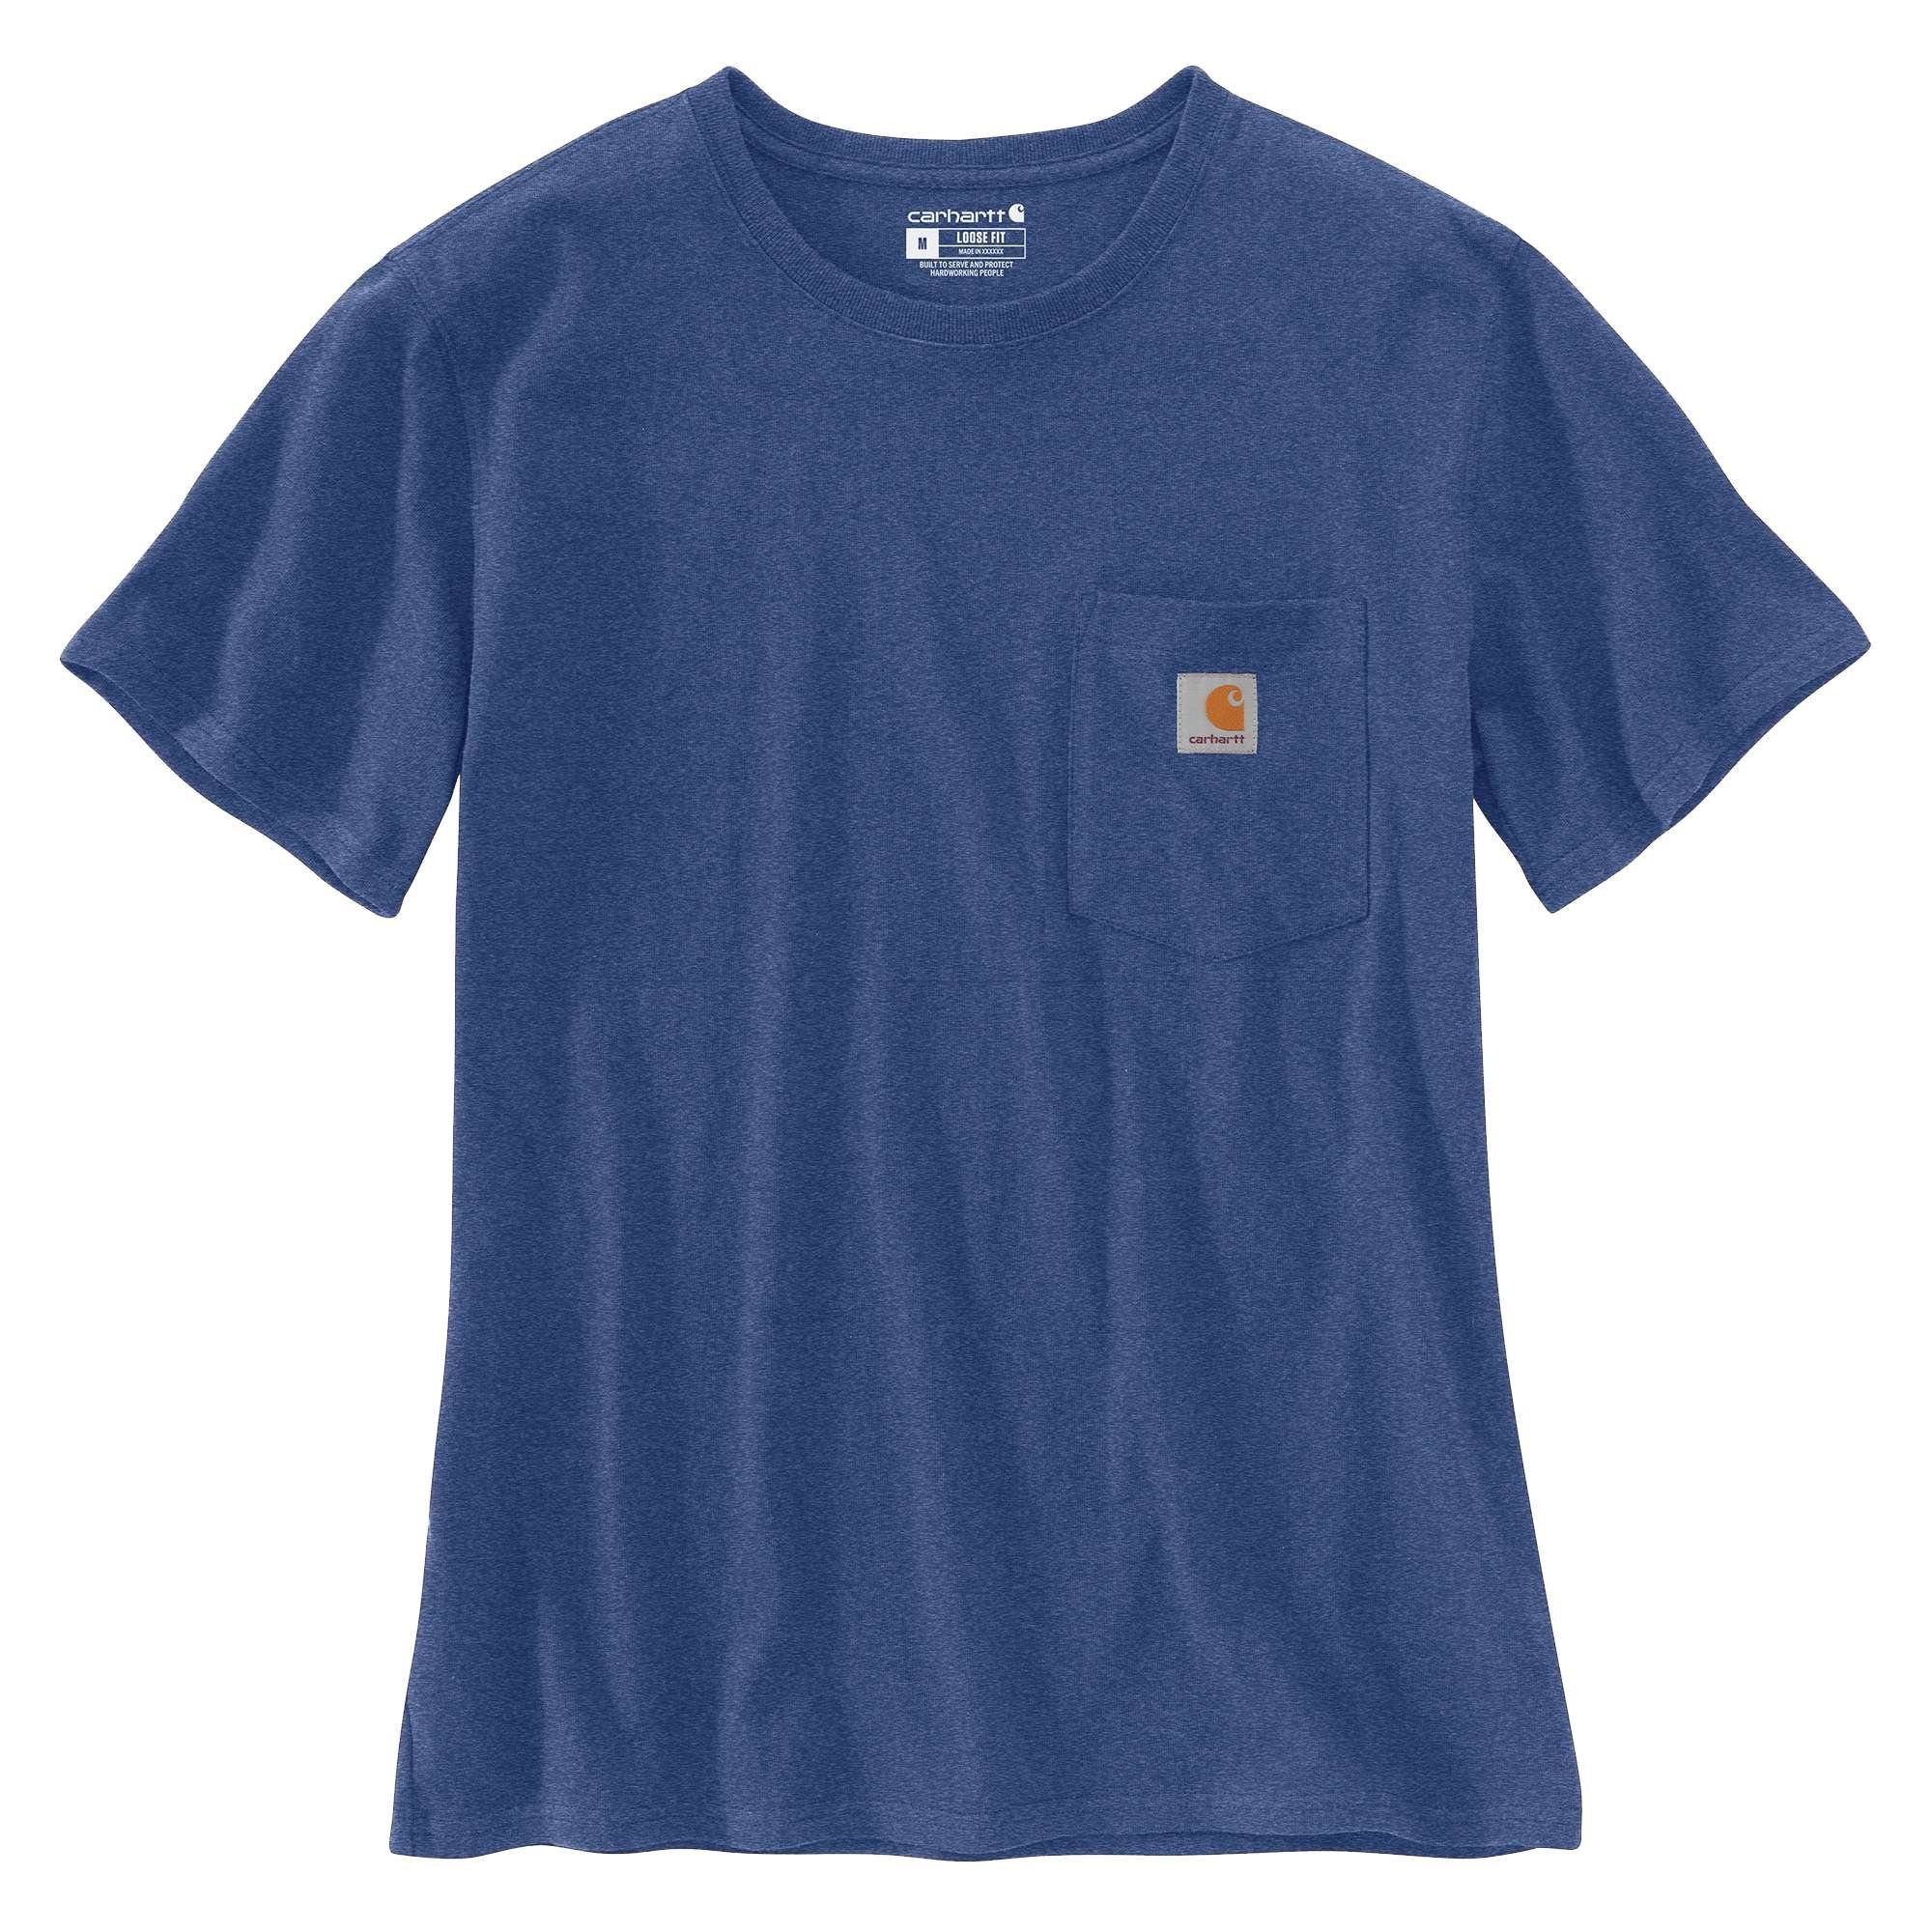 Carhartt T-Shirt scout T-Shirt heather Pocket Short-Sleeve blue Heavyweight Loose Carhartt Fit Adult Damen